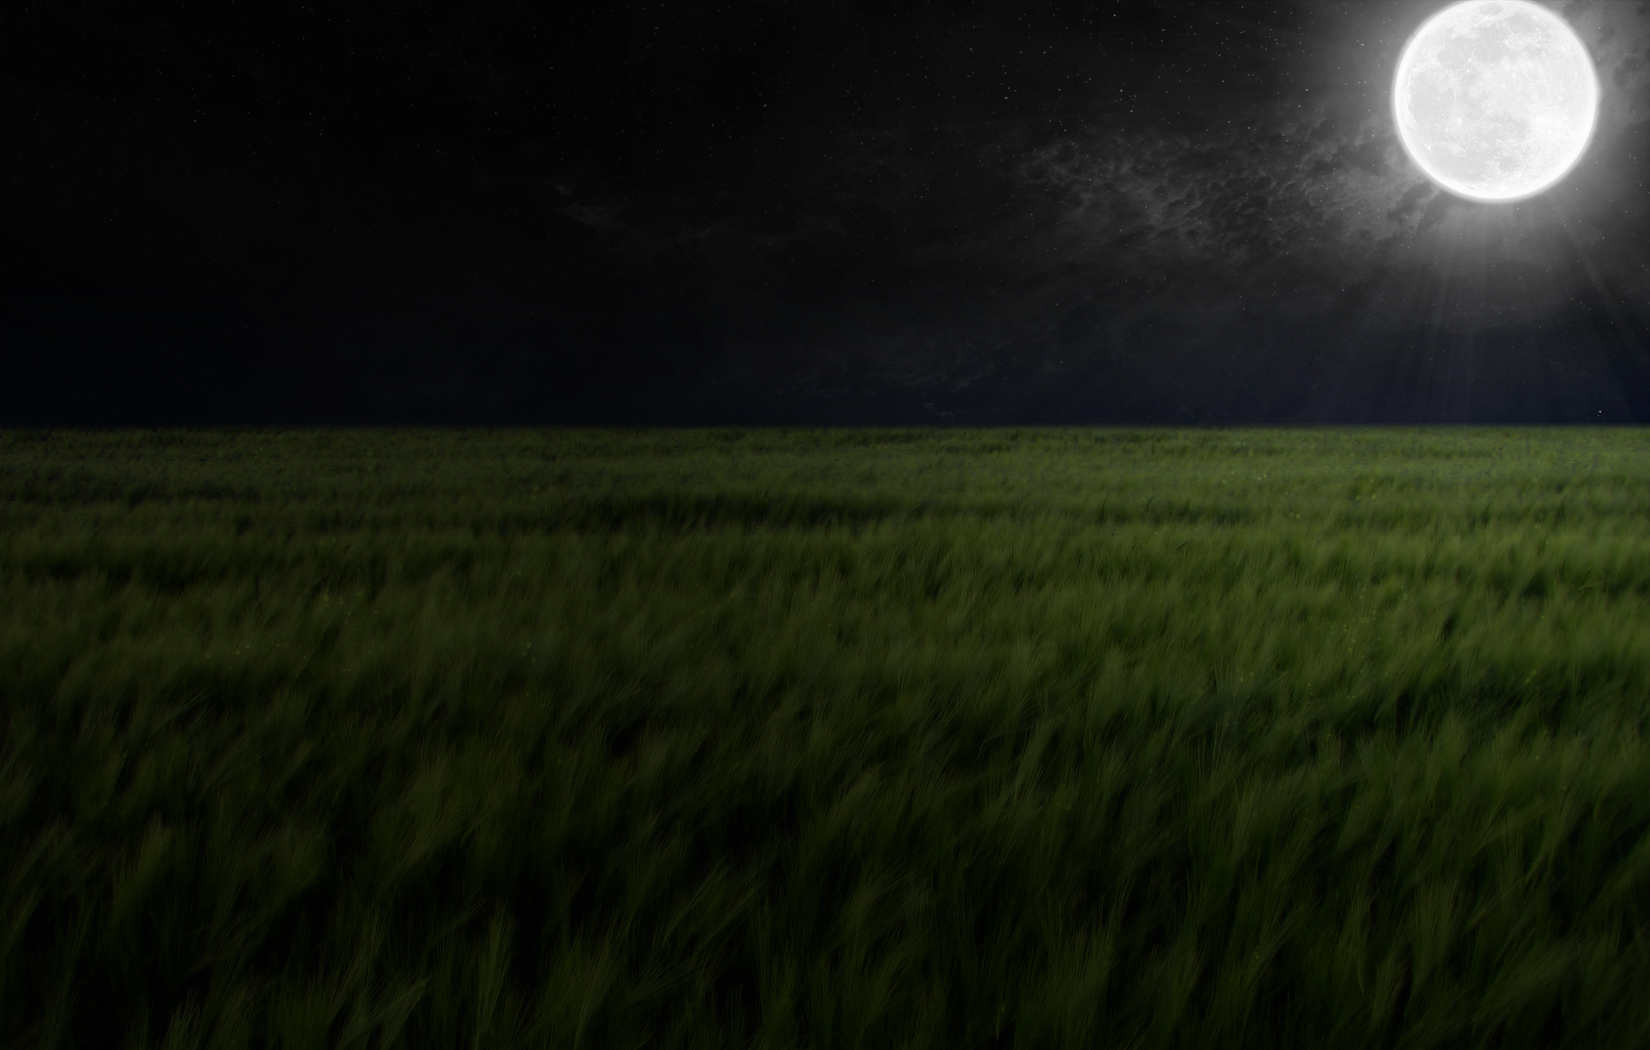 Dark Rye: A stunning field illuminated by moonlight in the stillness of night.